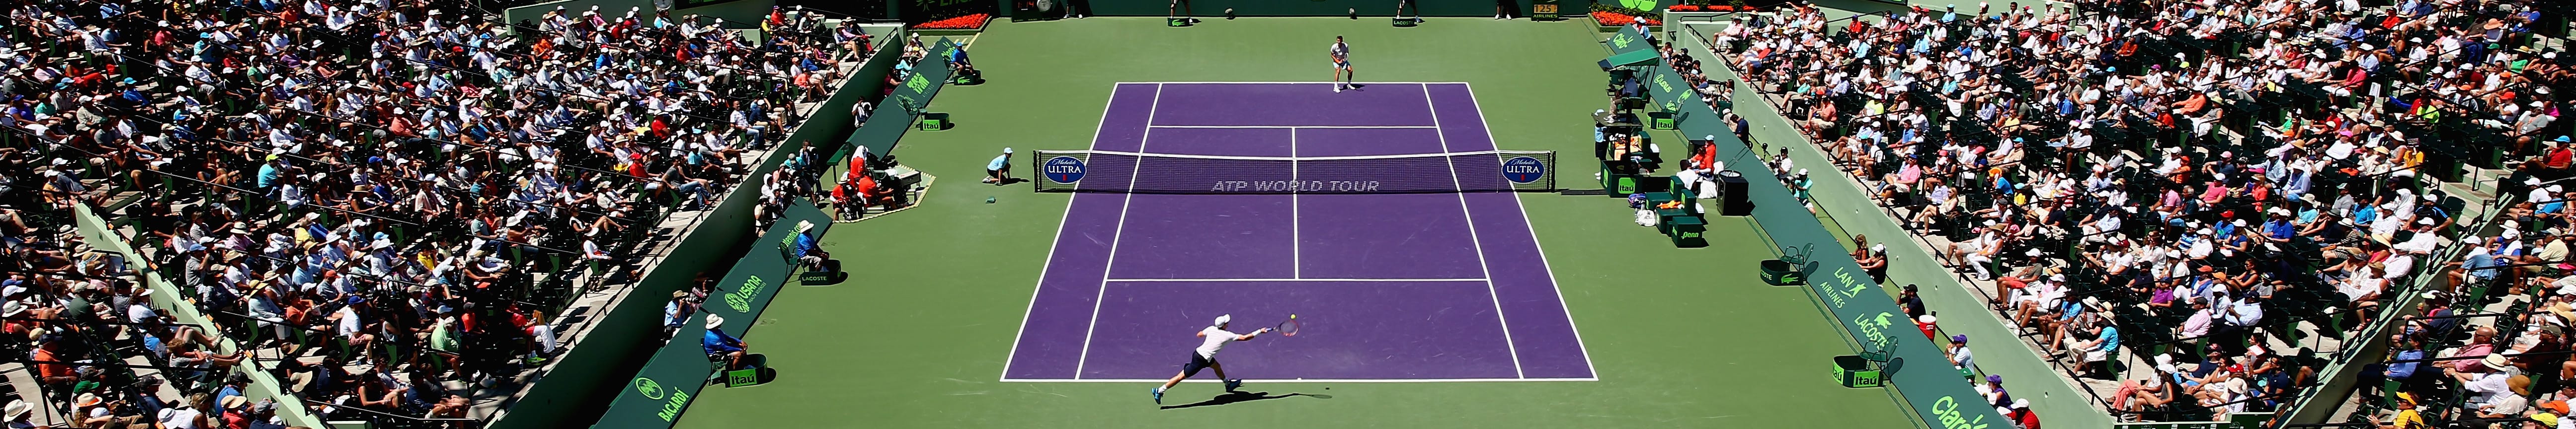 ATP Masters: Federer und Del Potro auch in Miami im Fokus